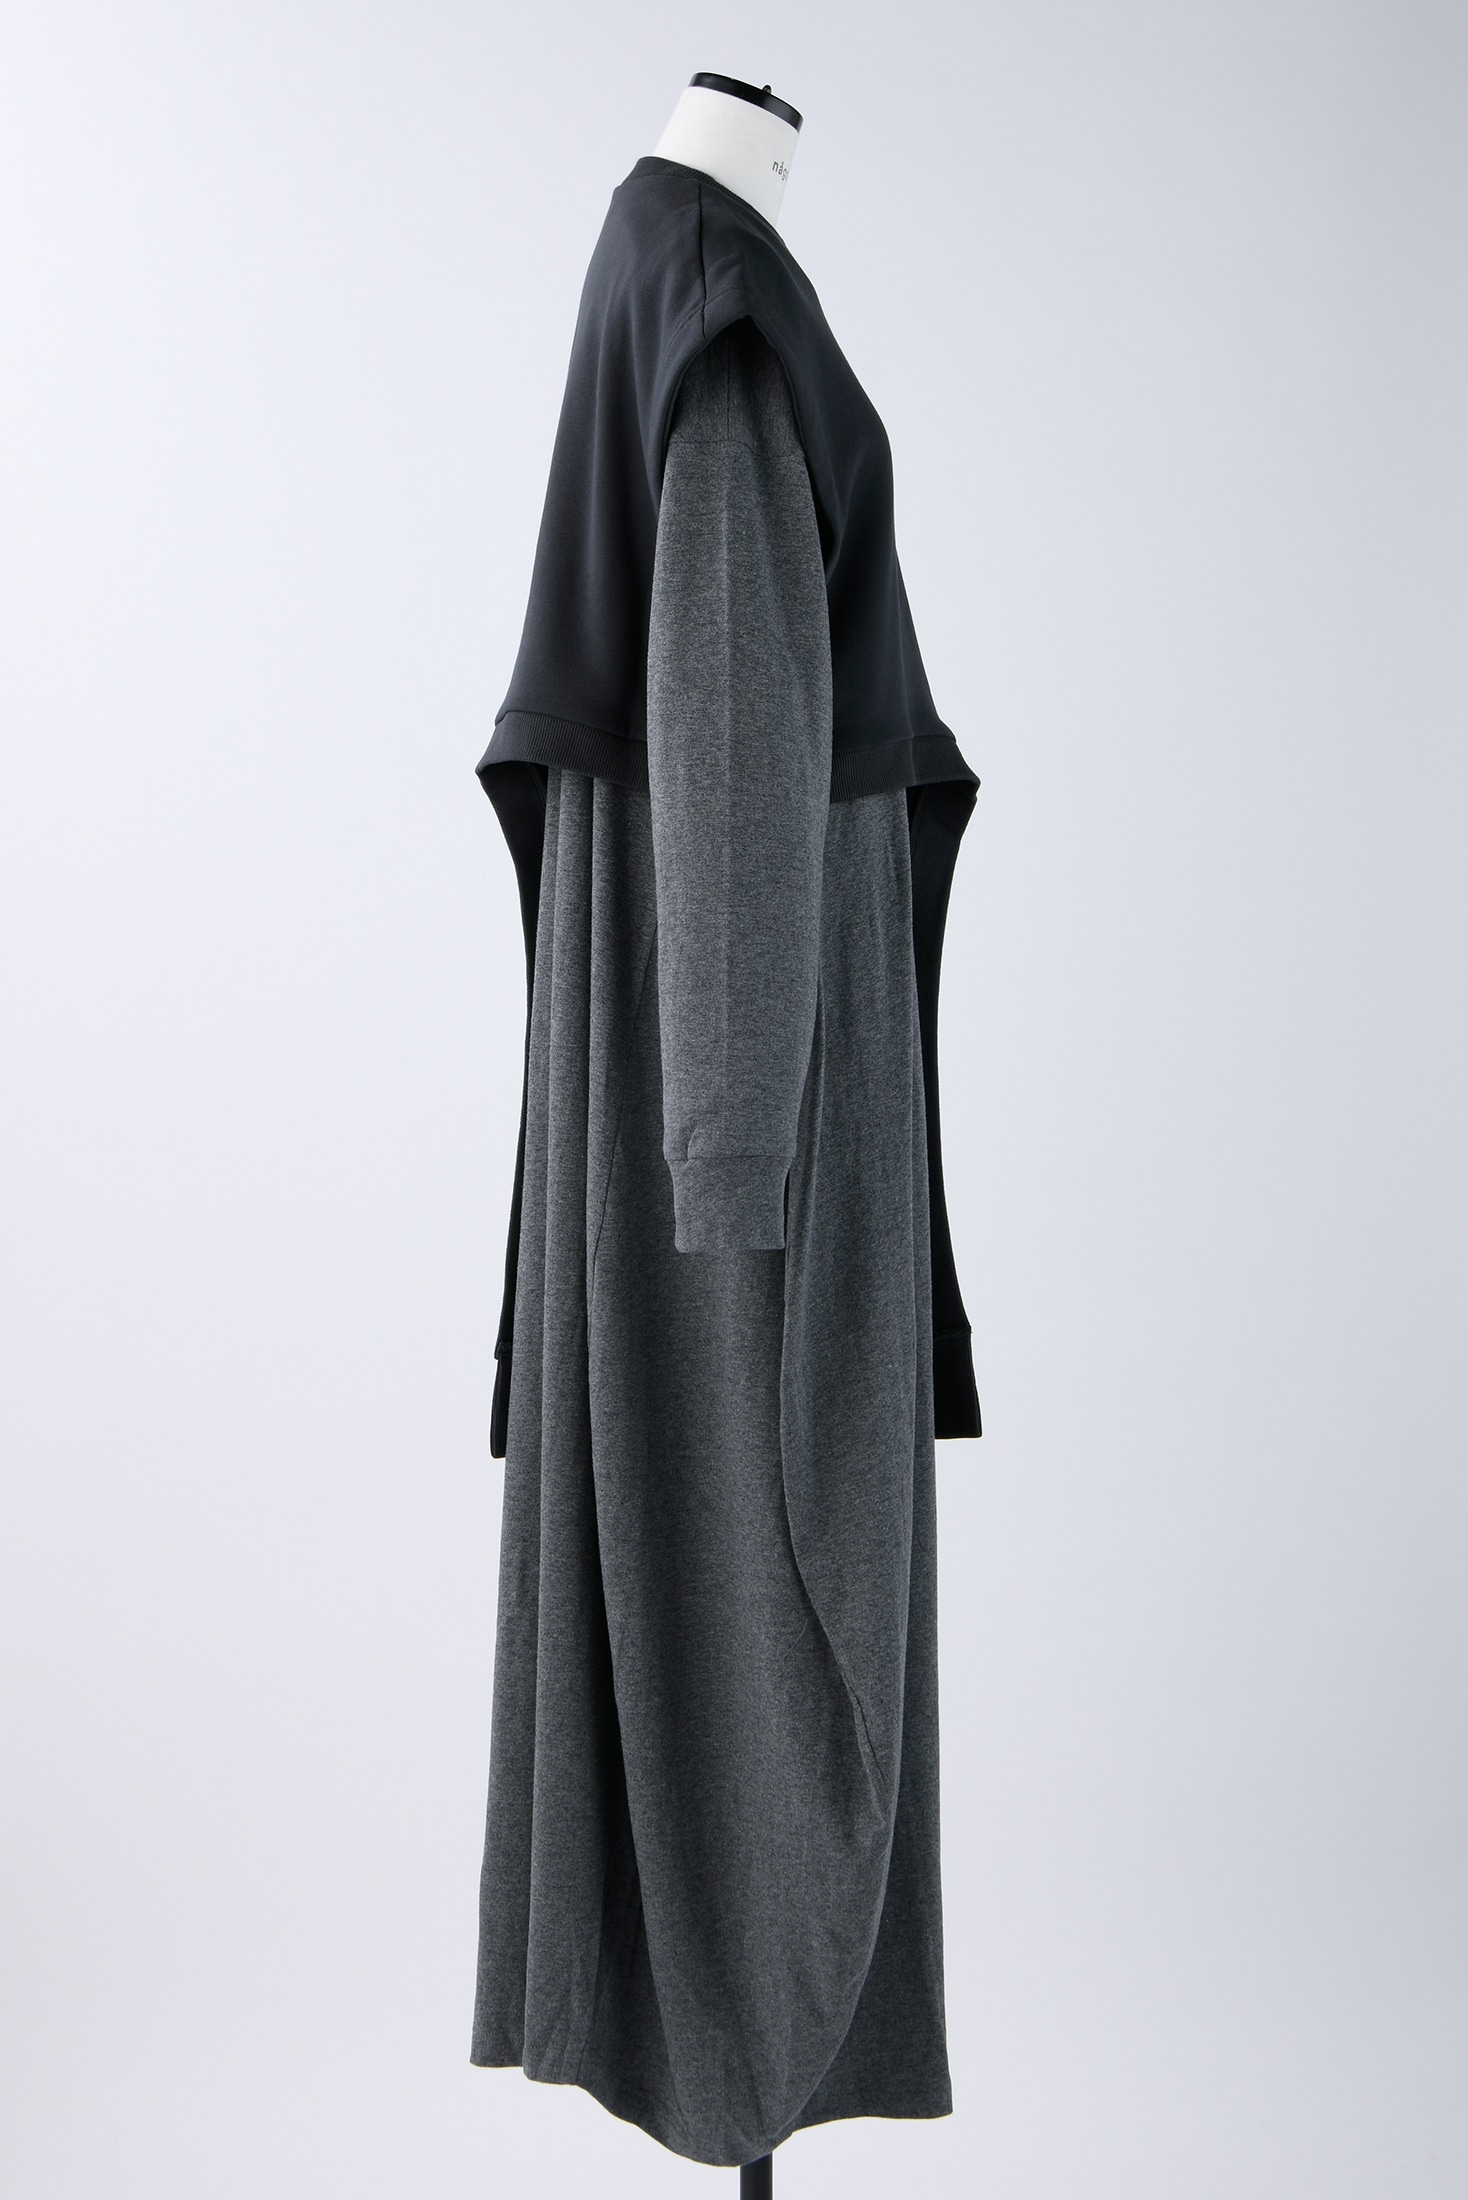 エンフォルドの出品一覧はこちらM 新品 nagonstans vest layered dress D/NVY